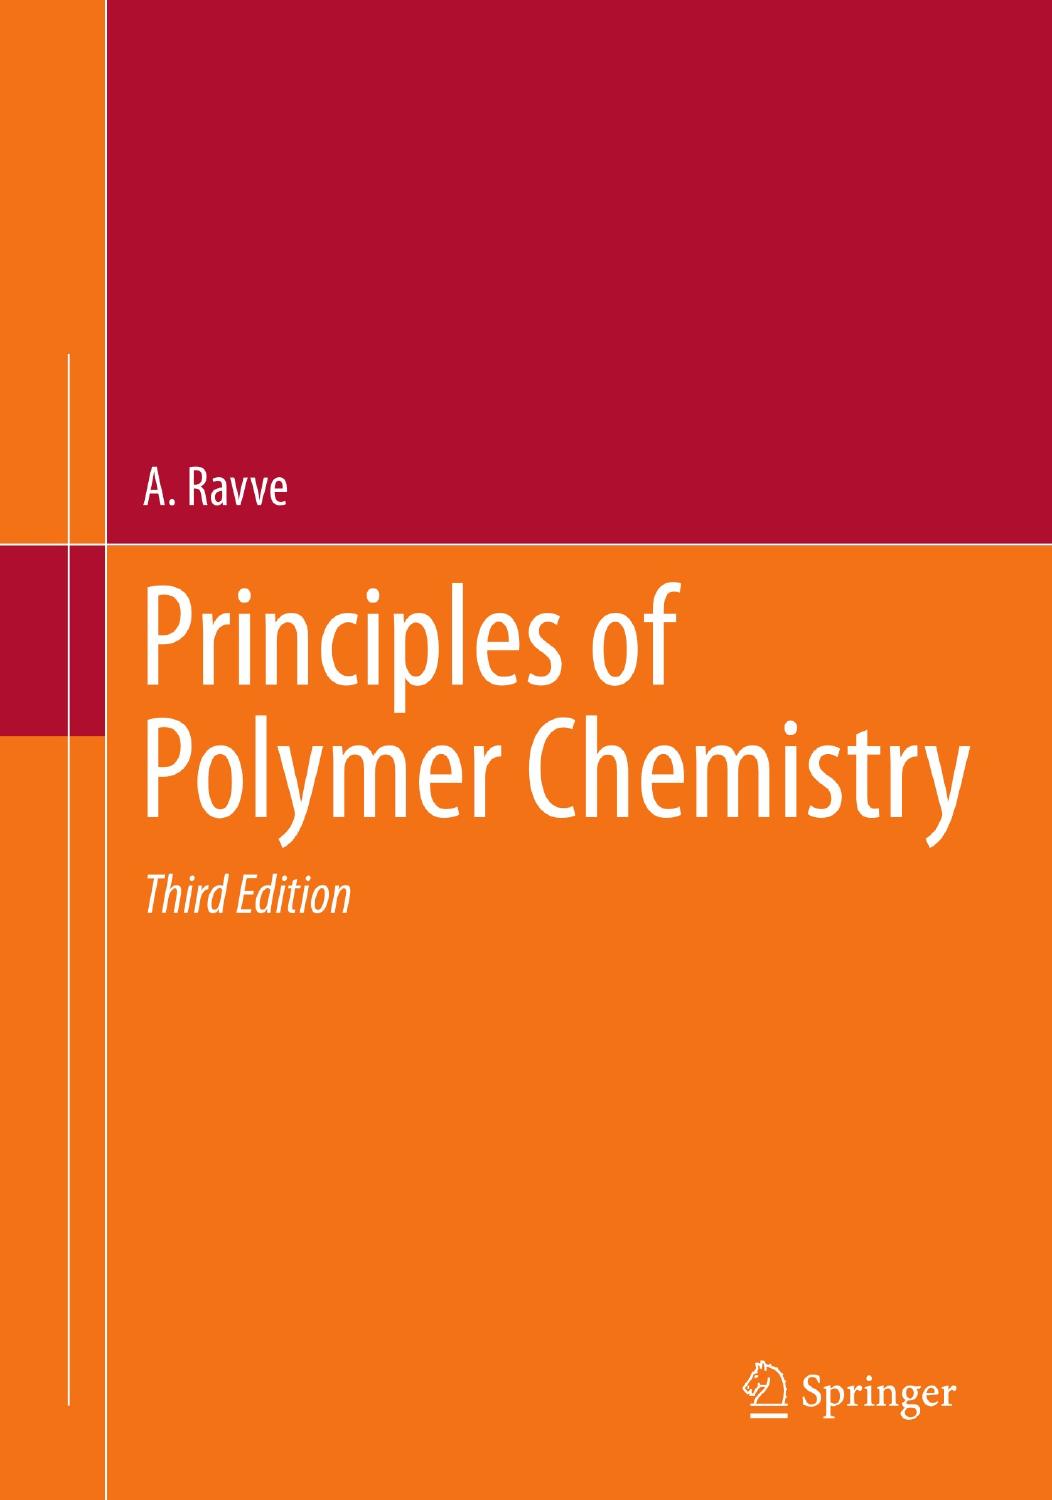 Principles of Polymer Chemistry by A. Ravve